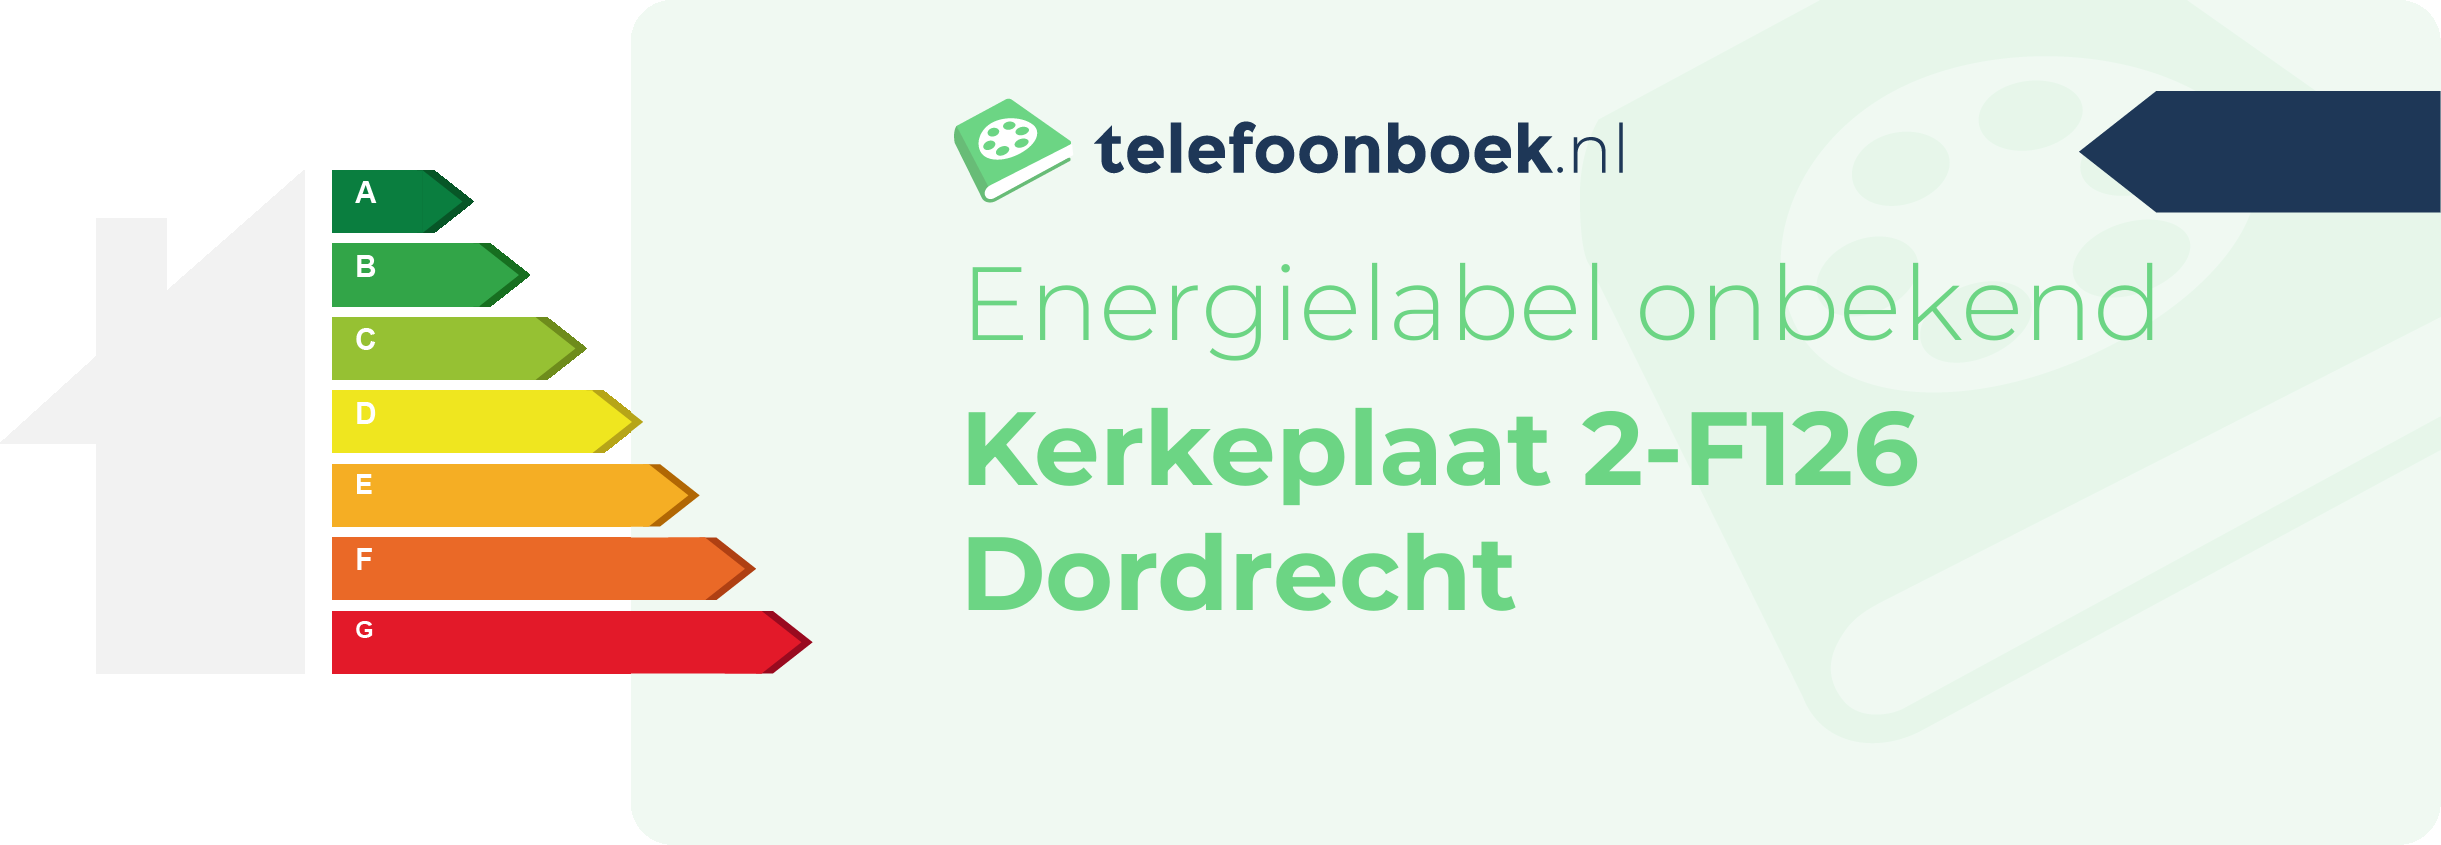 Energielabel Kerkeplaat 2-F126 Dordrecht